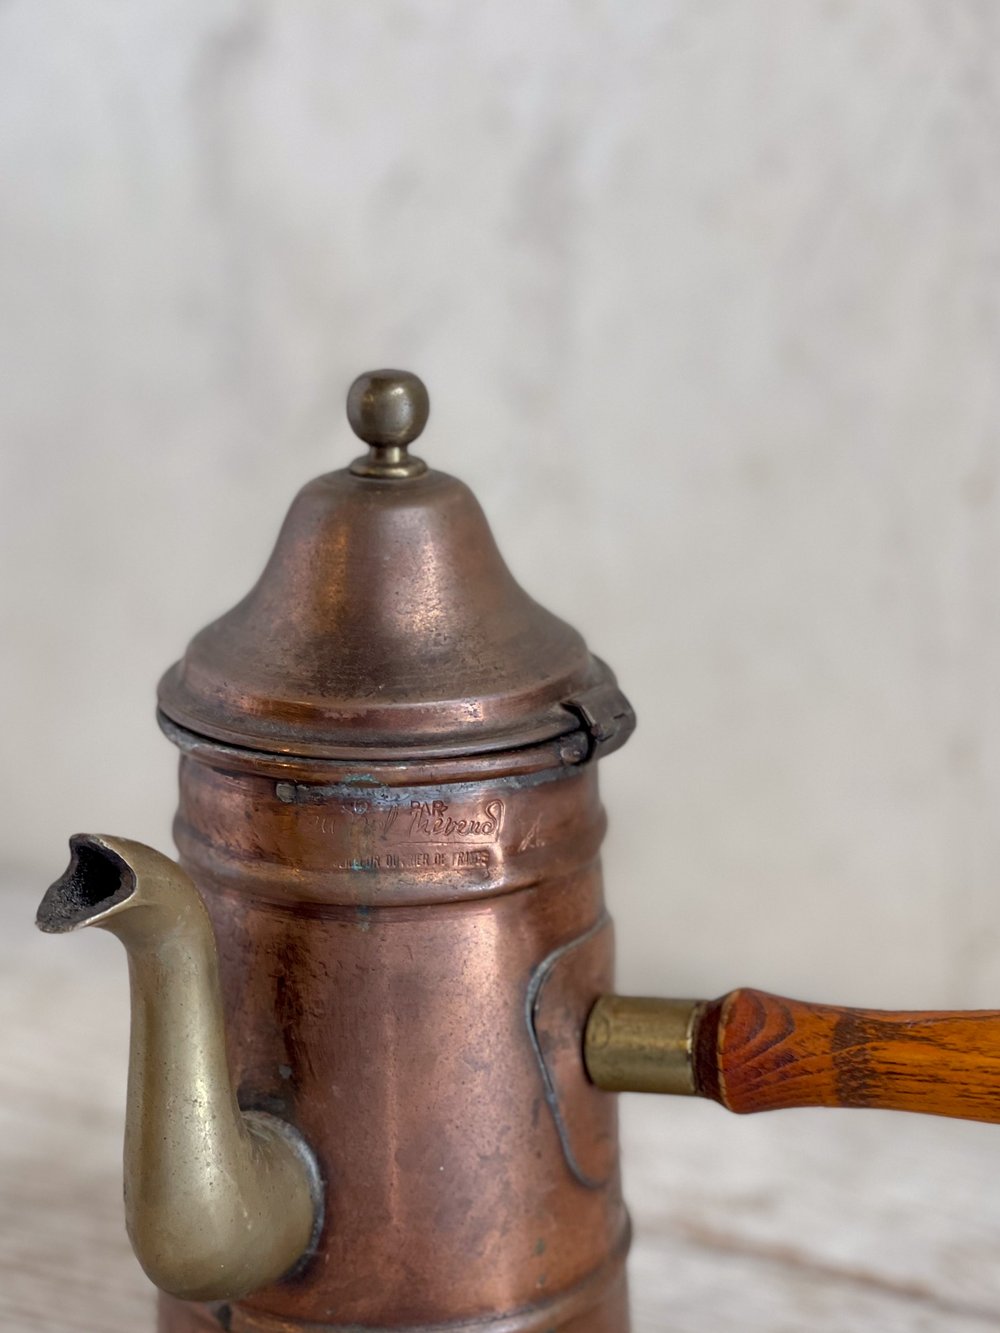 Copper Tea Kettle Gooseneck Spout  Tin-Lined Copper Teapot Hinged Handle